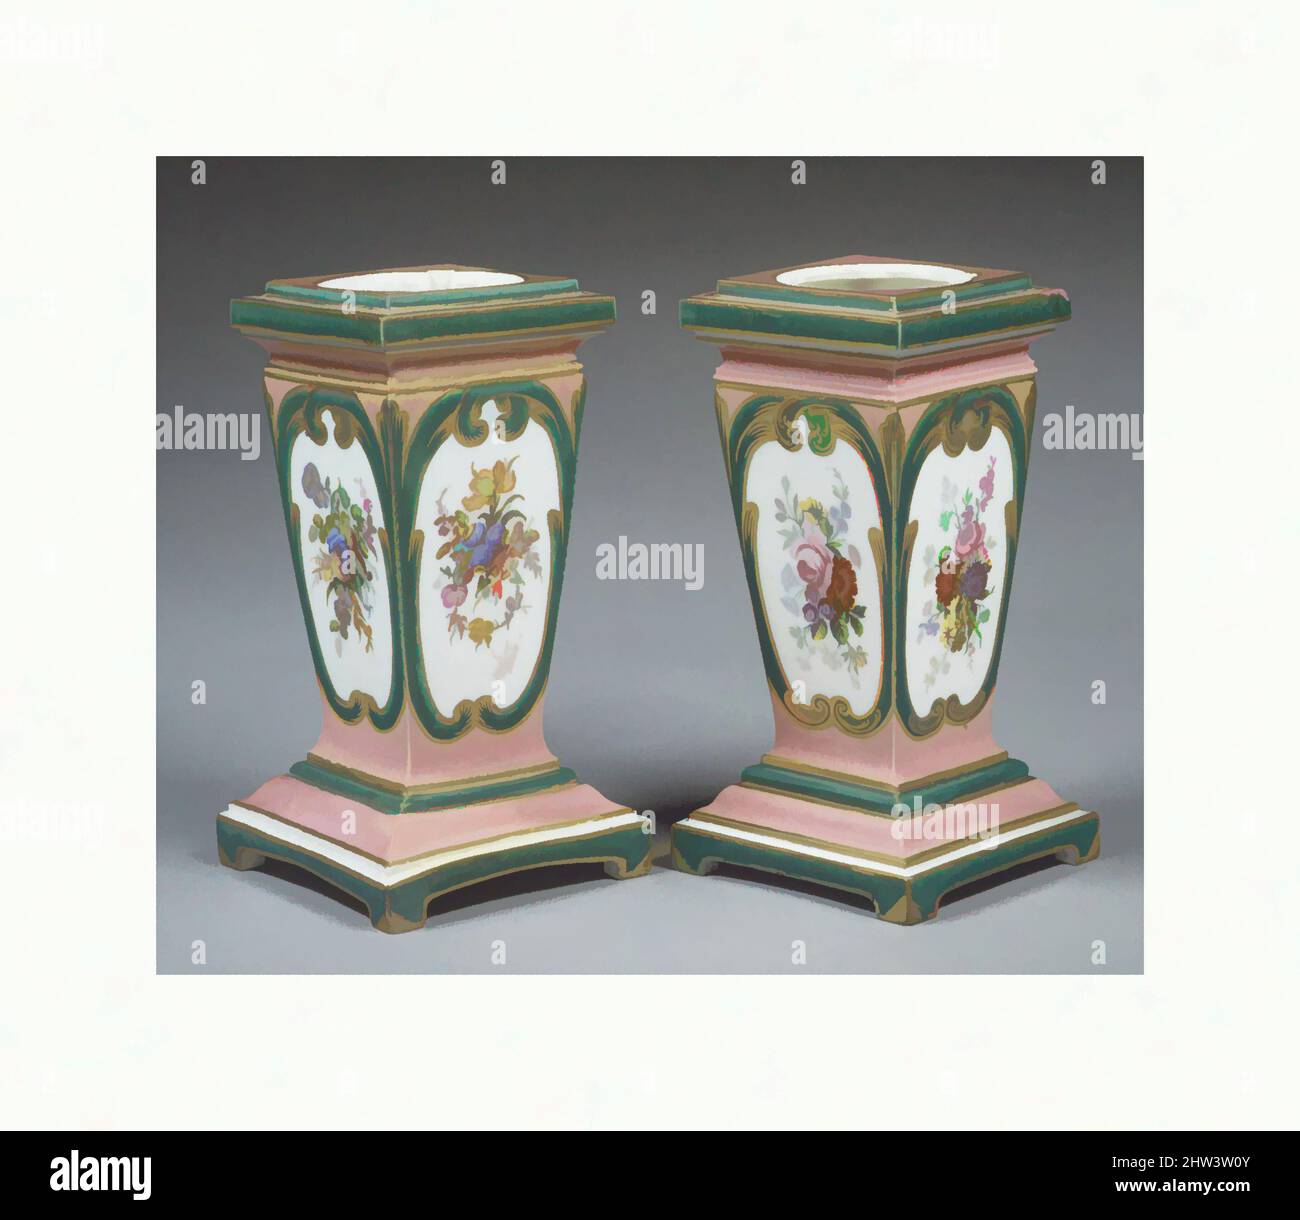 hoher Alamy in -Bildmaterial – Auflösung und vase Pedestal -Fotos